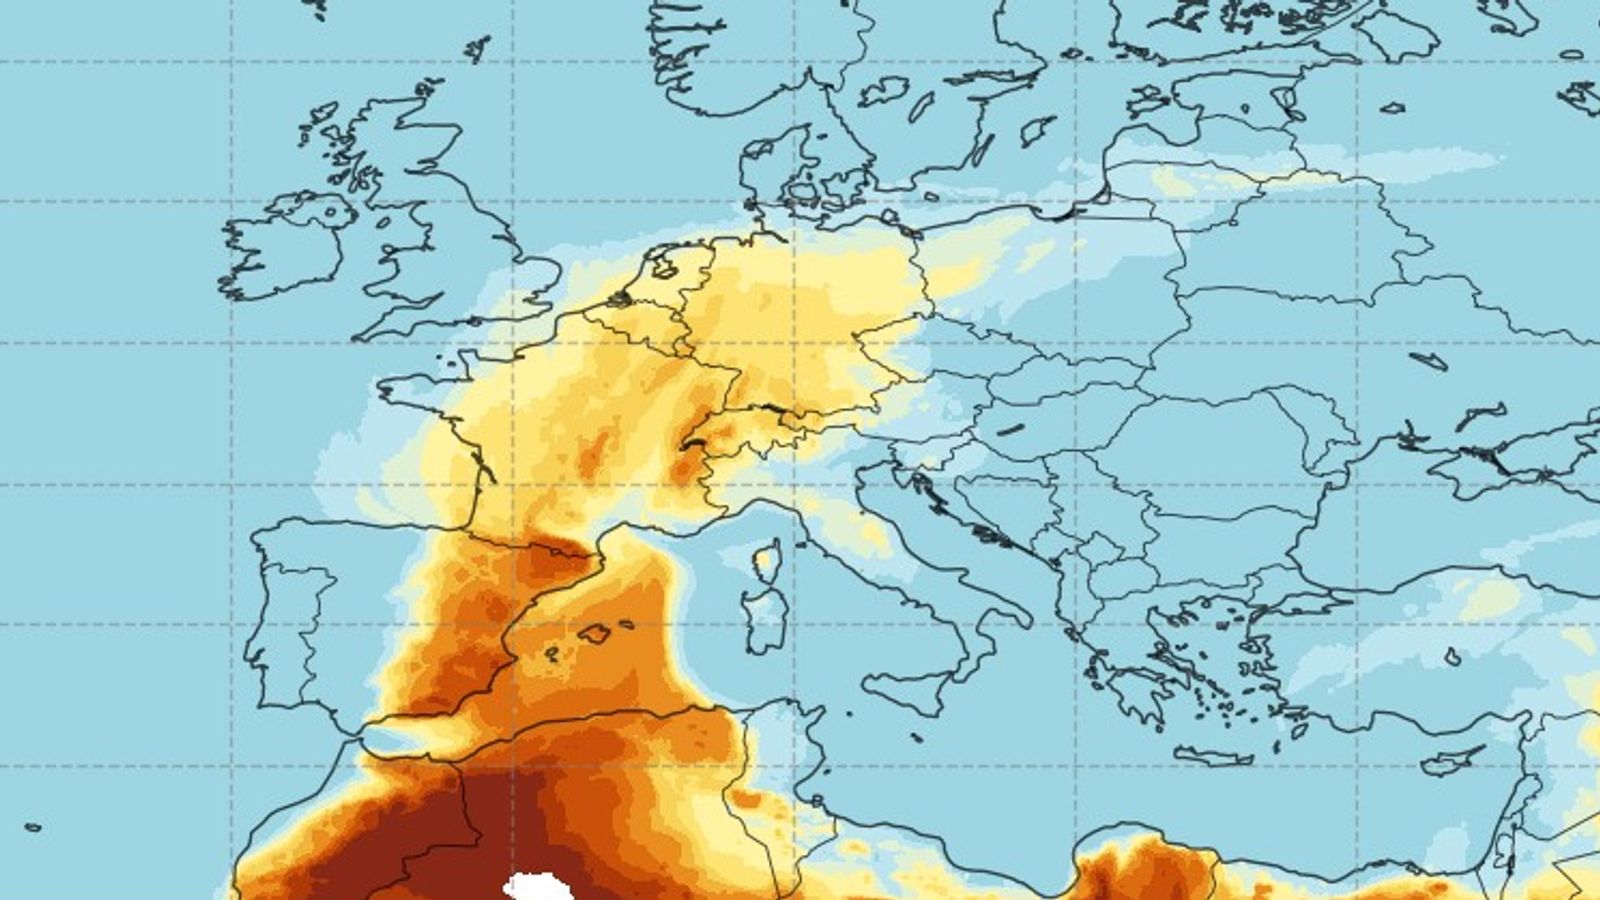 Un nuage de poussière saharienne « exceptionnellement intense » frappe l’Europe, apportant un ciel brumeux et recouvrant les voitures |  Actualités climatiques